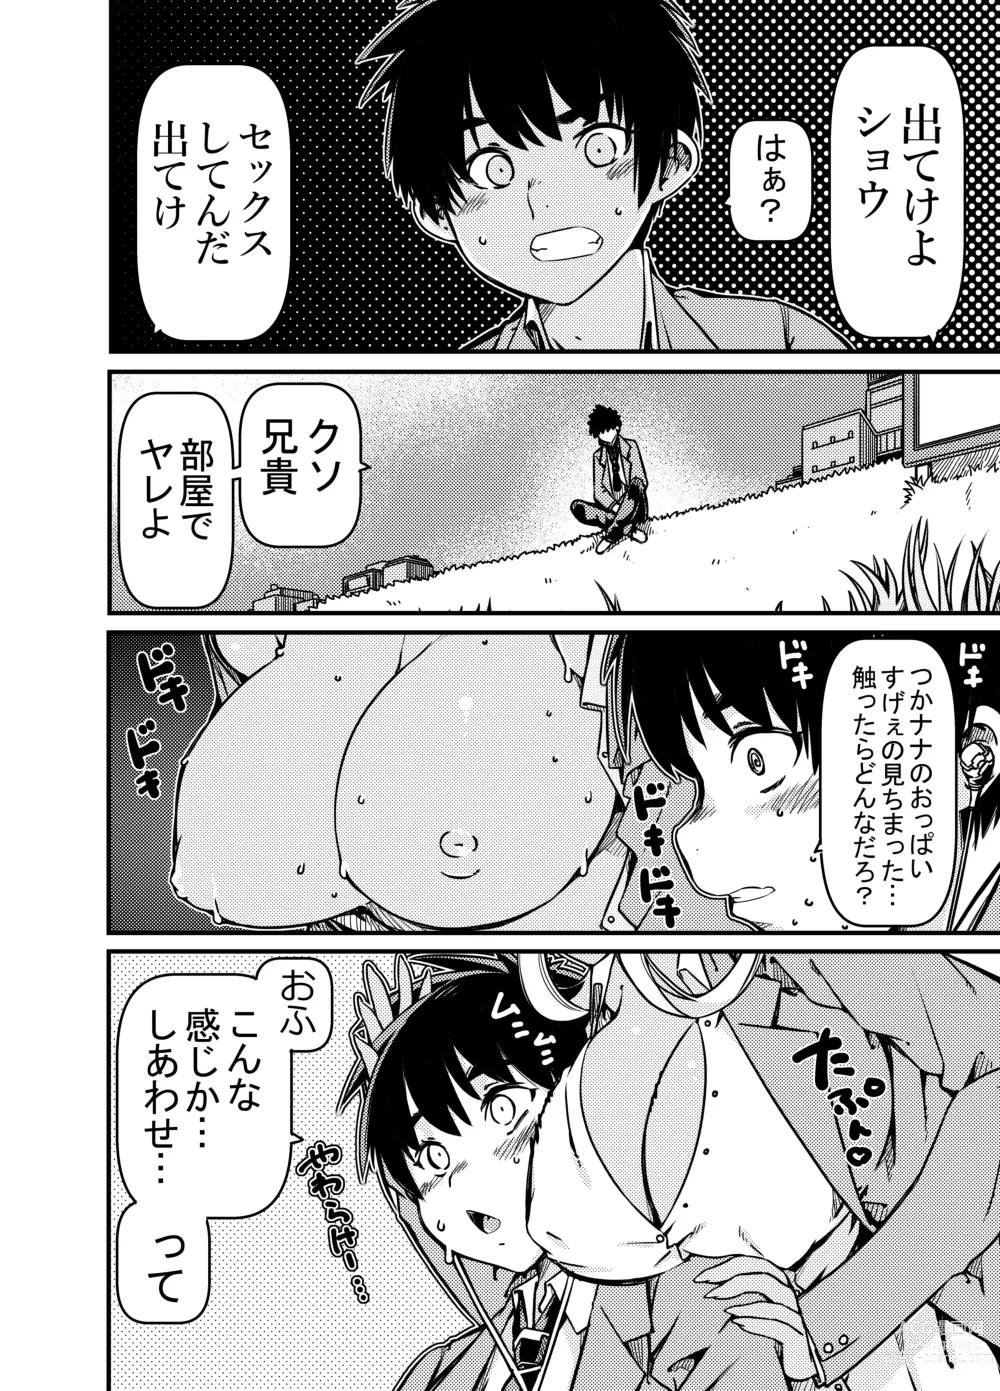 Page 3 of doujinshi Aniki no Kanojo no Kuro Gal to Heya ni Tojikomeraretan dakedo?